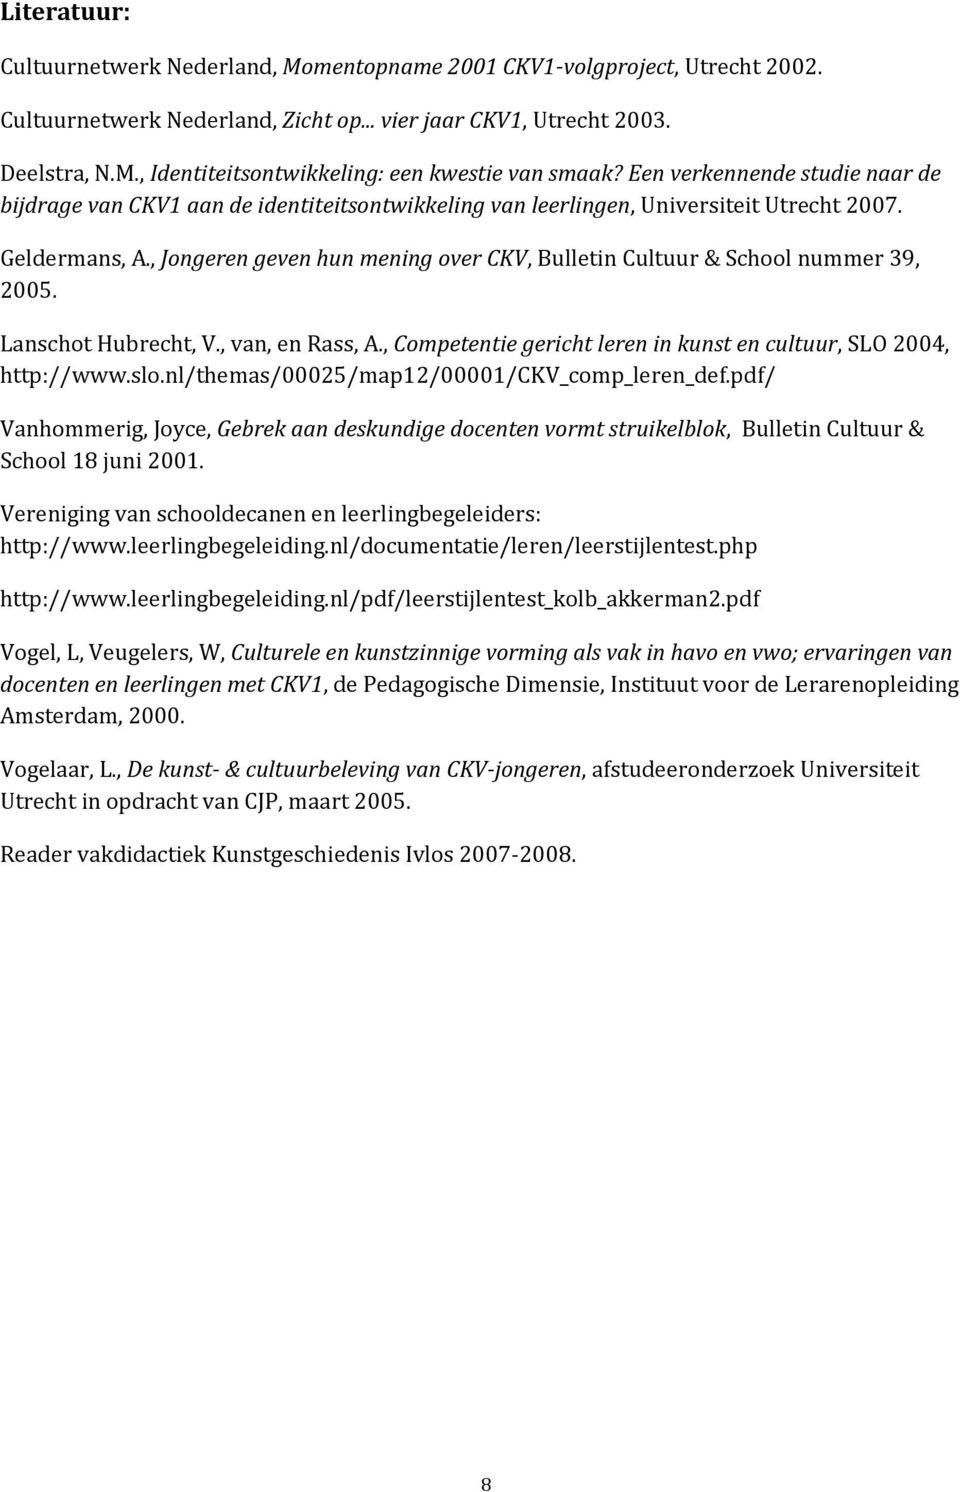 , Jongeren geven hun mening over CKV, Bulletin Cultuur & School nummer 39, 2005. Lanschot Hubrecht, V., van, en Rass, A., Competentie gericht leren in kunst en cultuur, SLO 2004, http://www.slo.